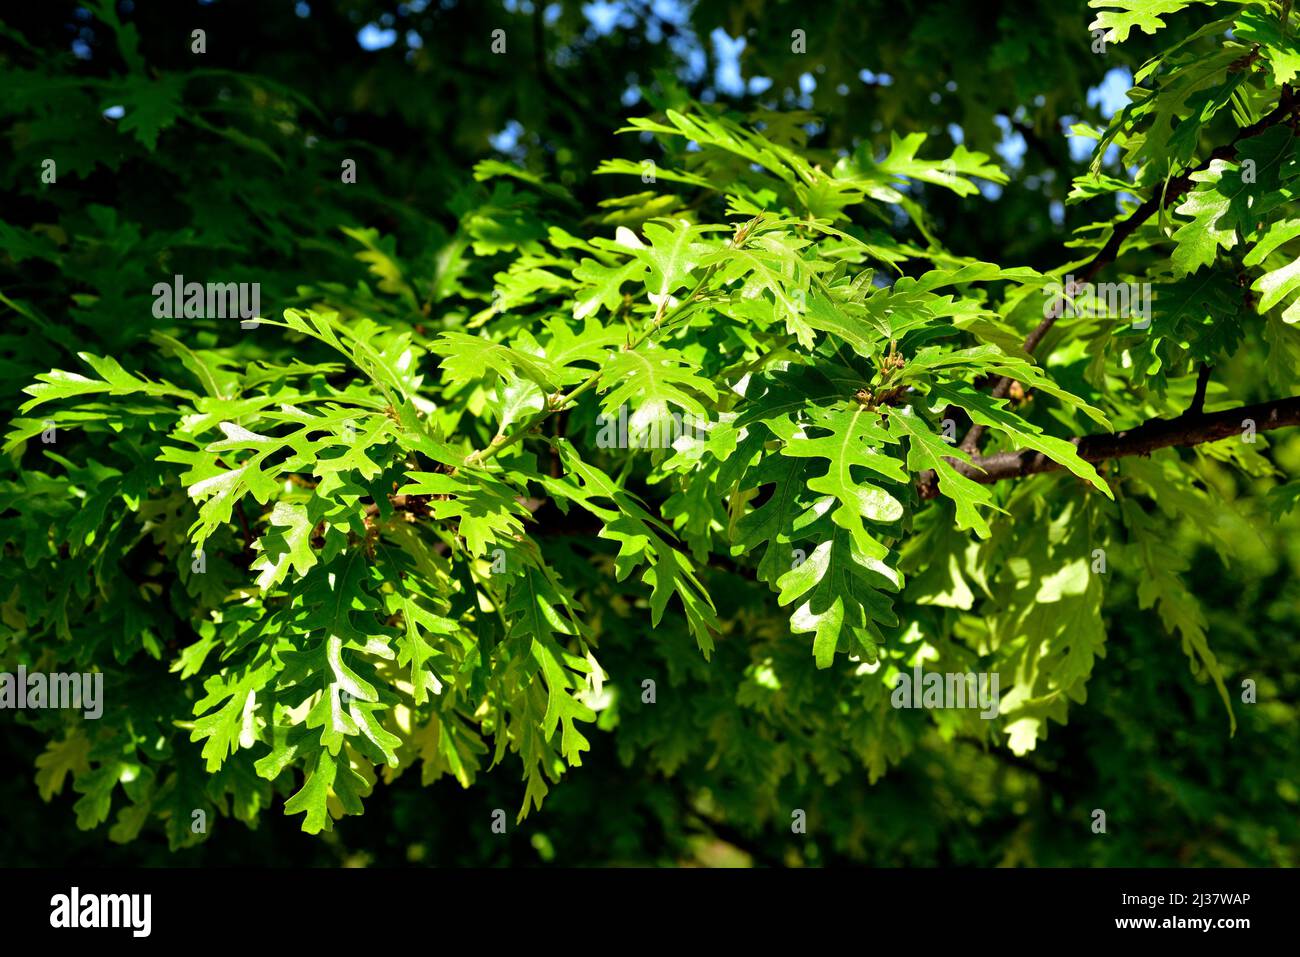 Le chêne de dinde (Quercus cerris) est un arbre à feuilles caduques originaire du centre et du sud-est de l'Europe et de l'Asie mineure. Détails des feuilles. Banque D'Images